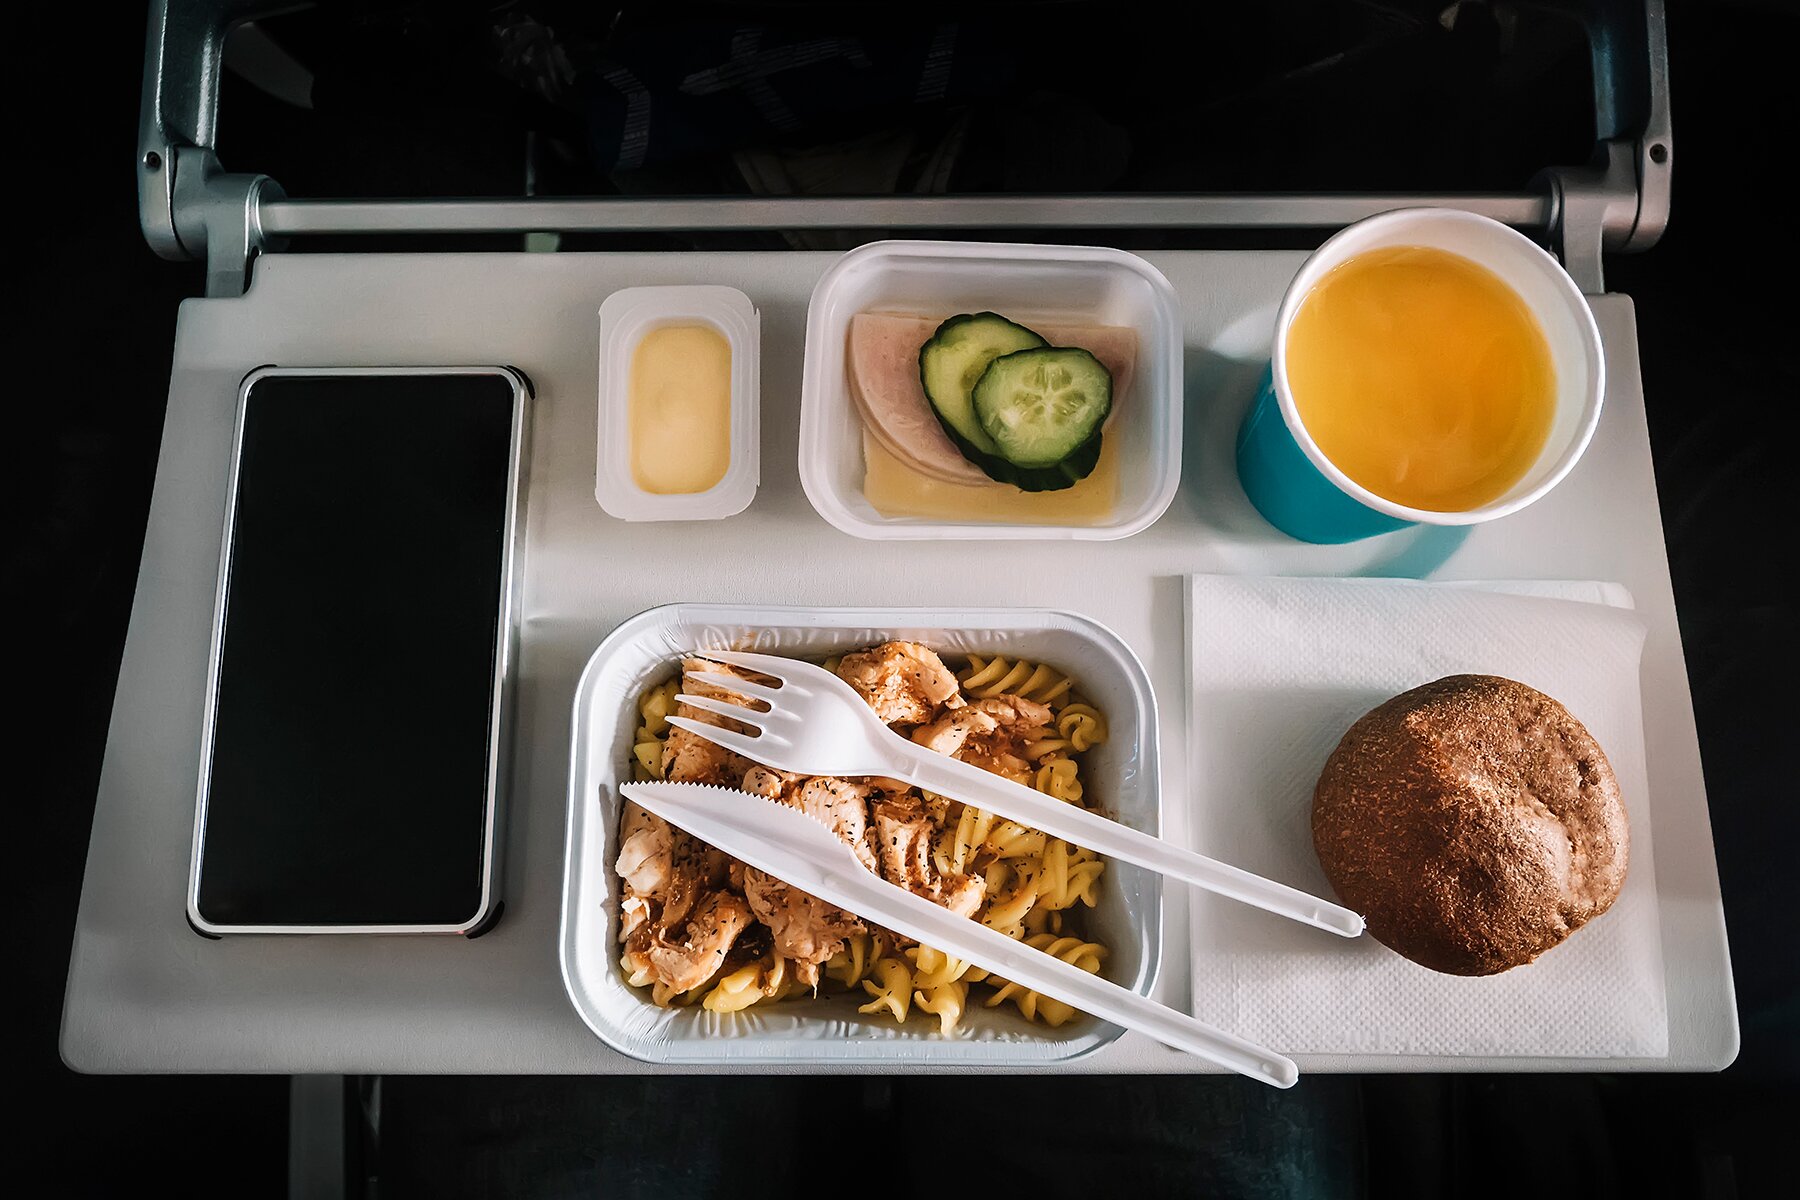 Có 1 đồ ăn quen thuộc nhưng đừng bao giờ gọi món trên máy bay - 2